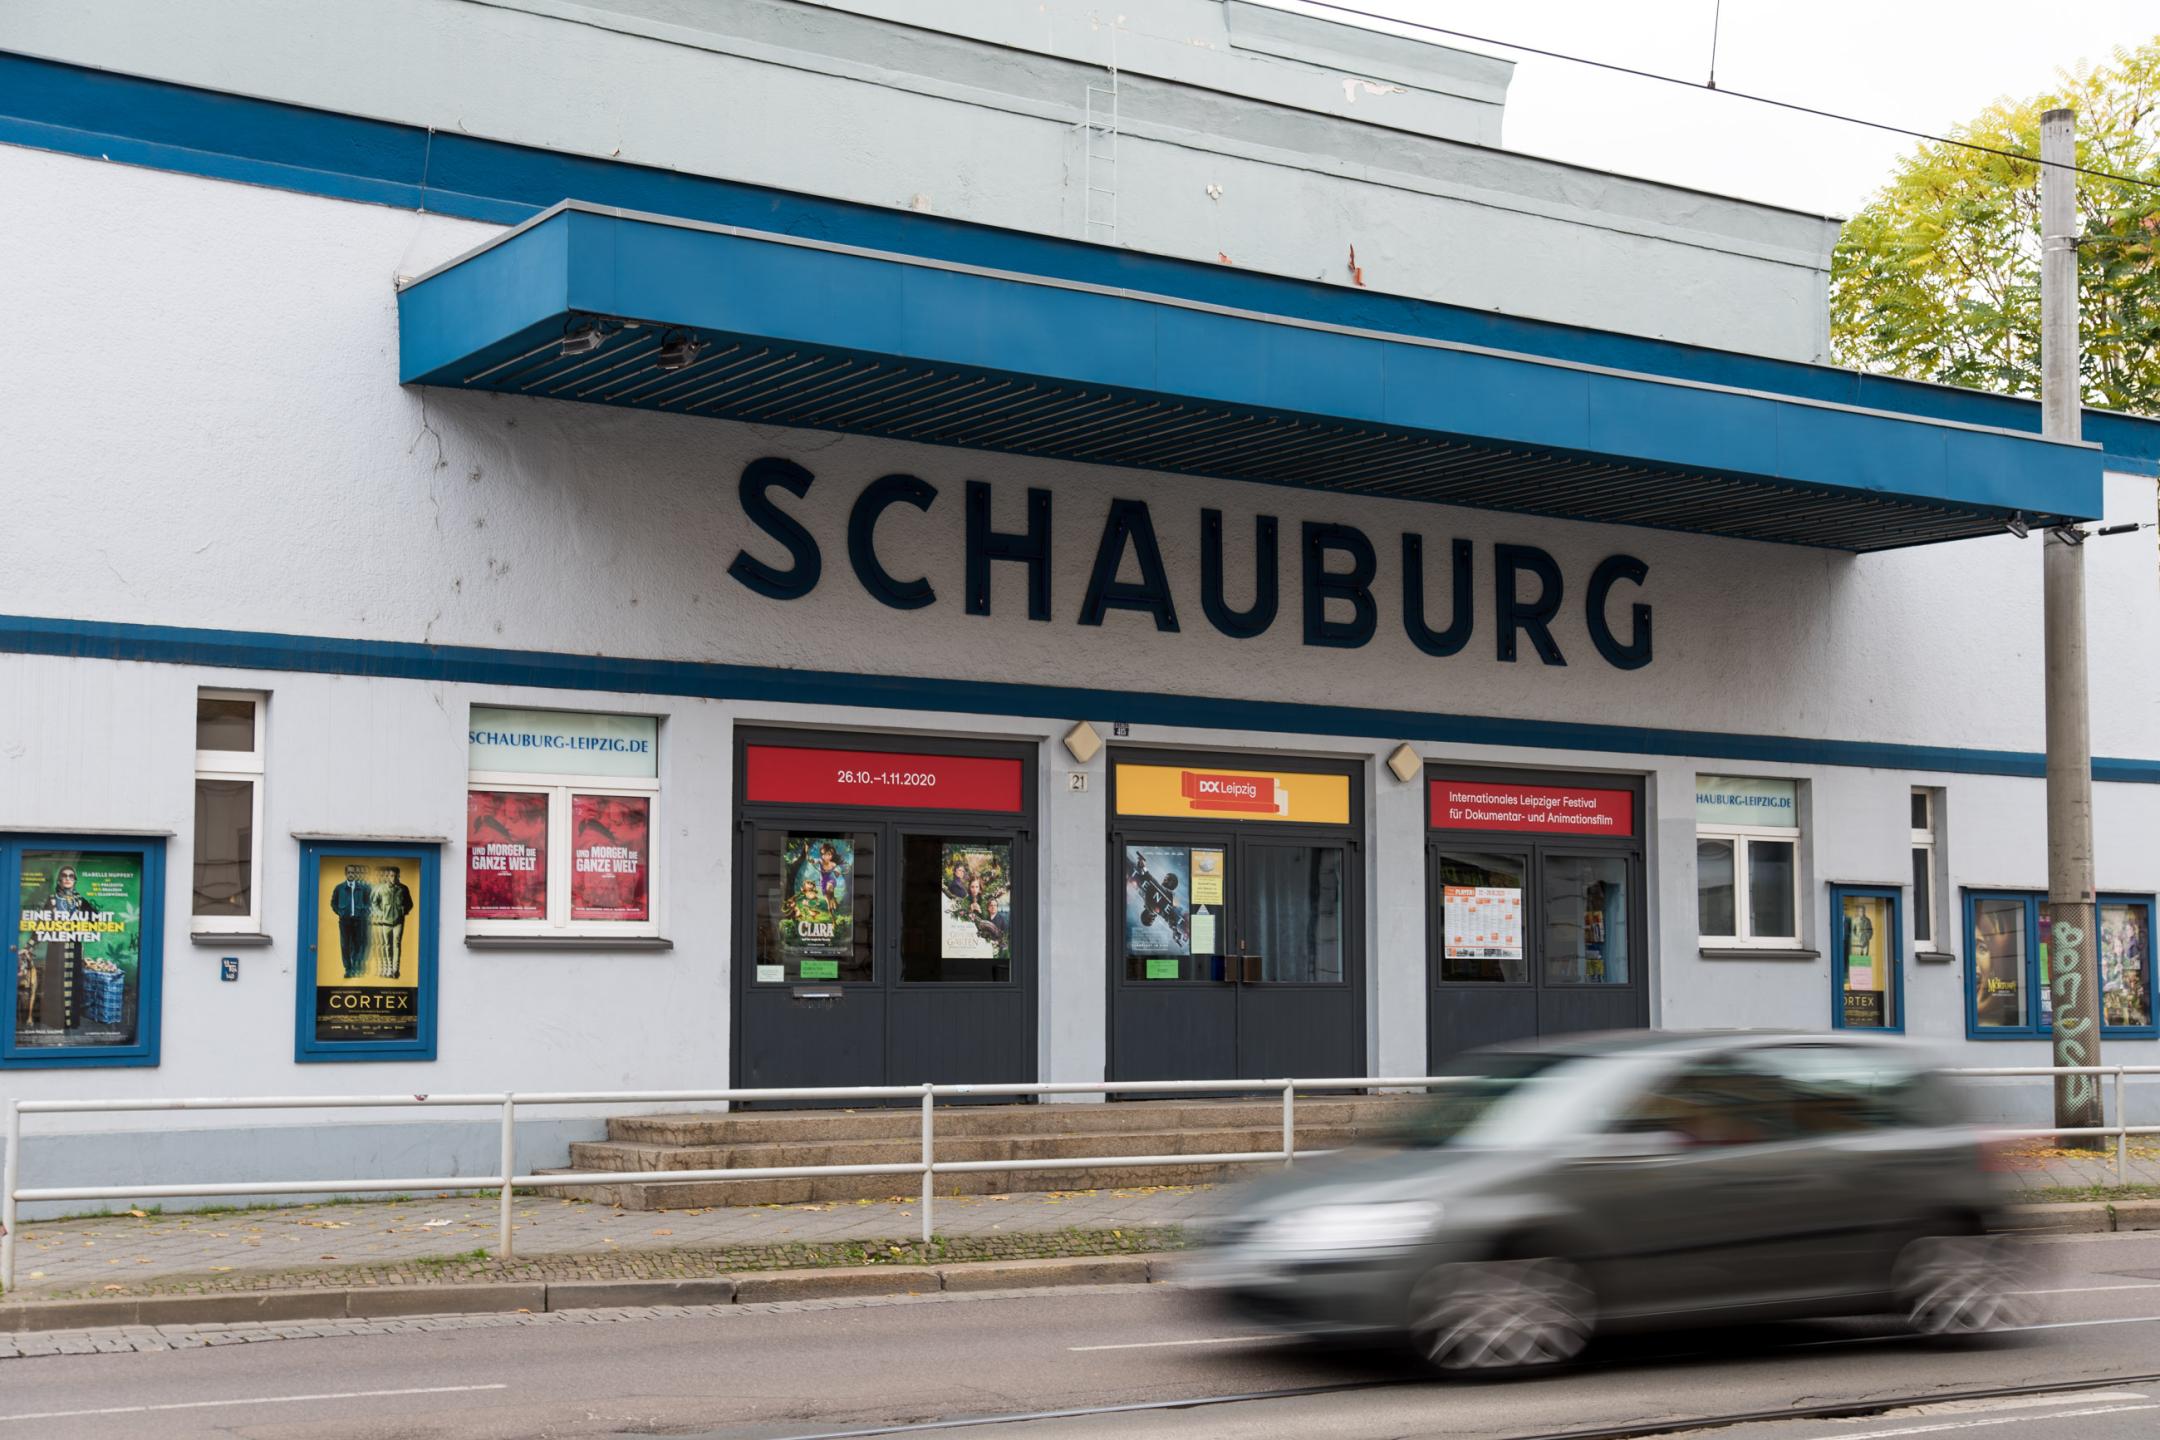 Eingang zu einem Kinogebäude mit blauem Flachdach. Über den Eingangstüren steht in großen Buchstaben "Schauburg".